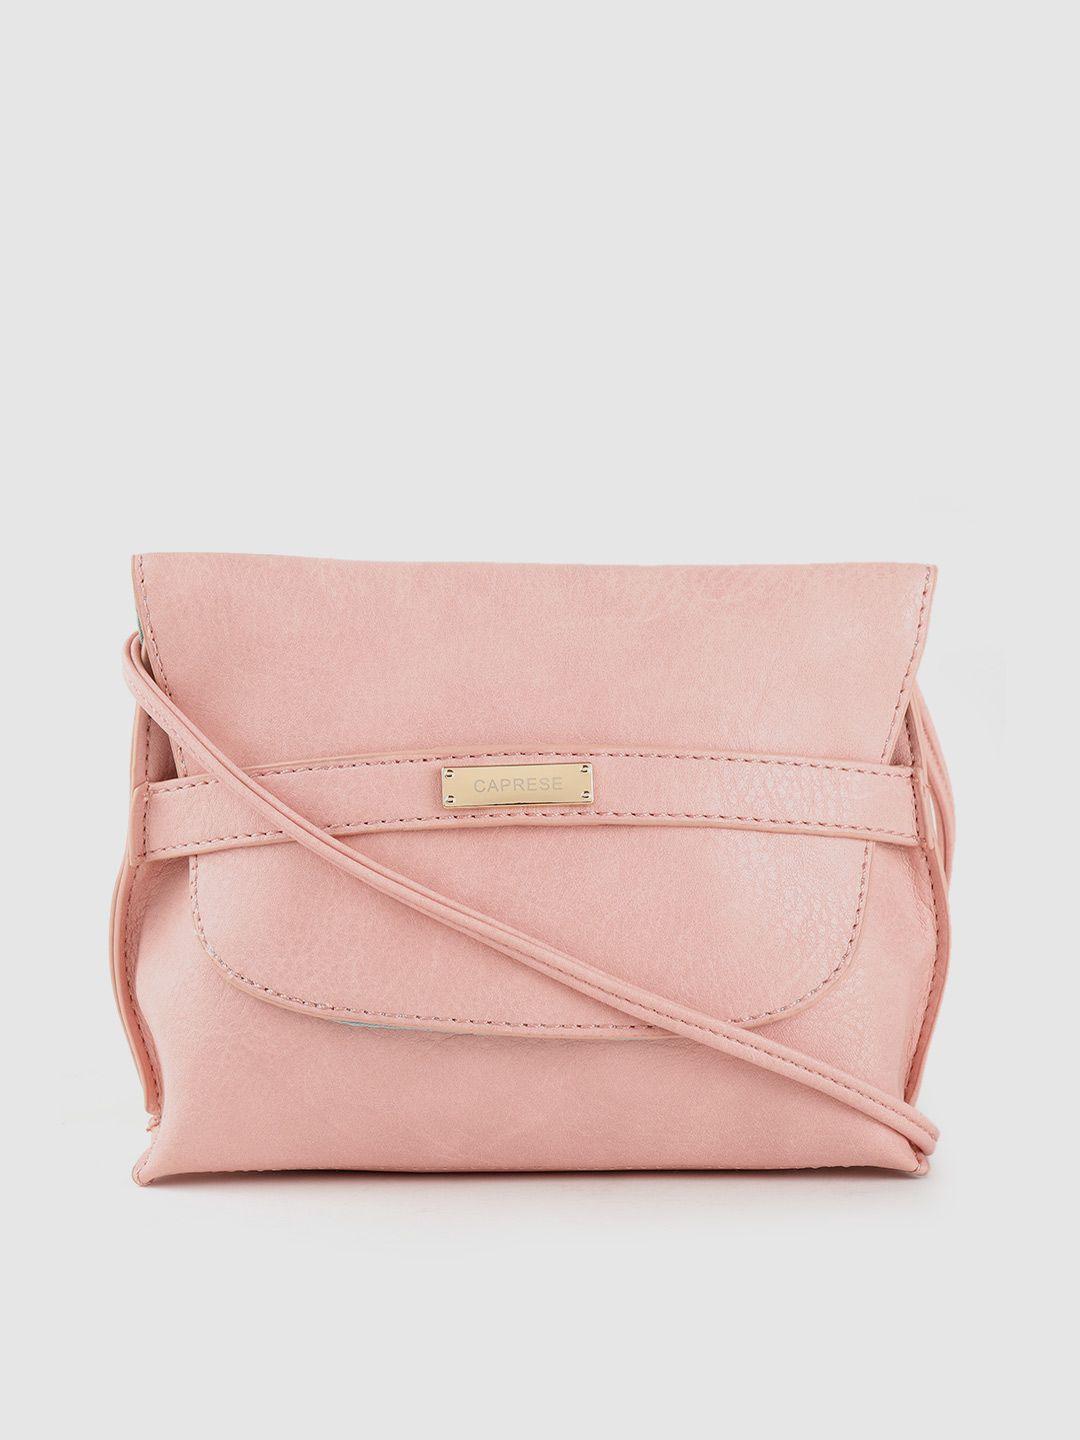 caprese pink solid sling bag